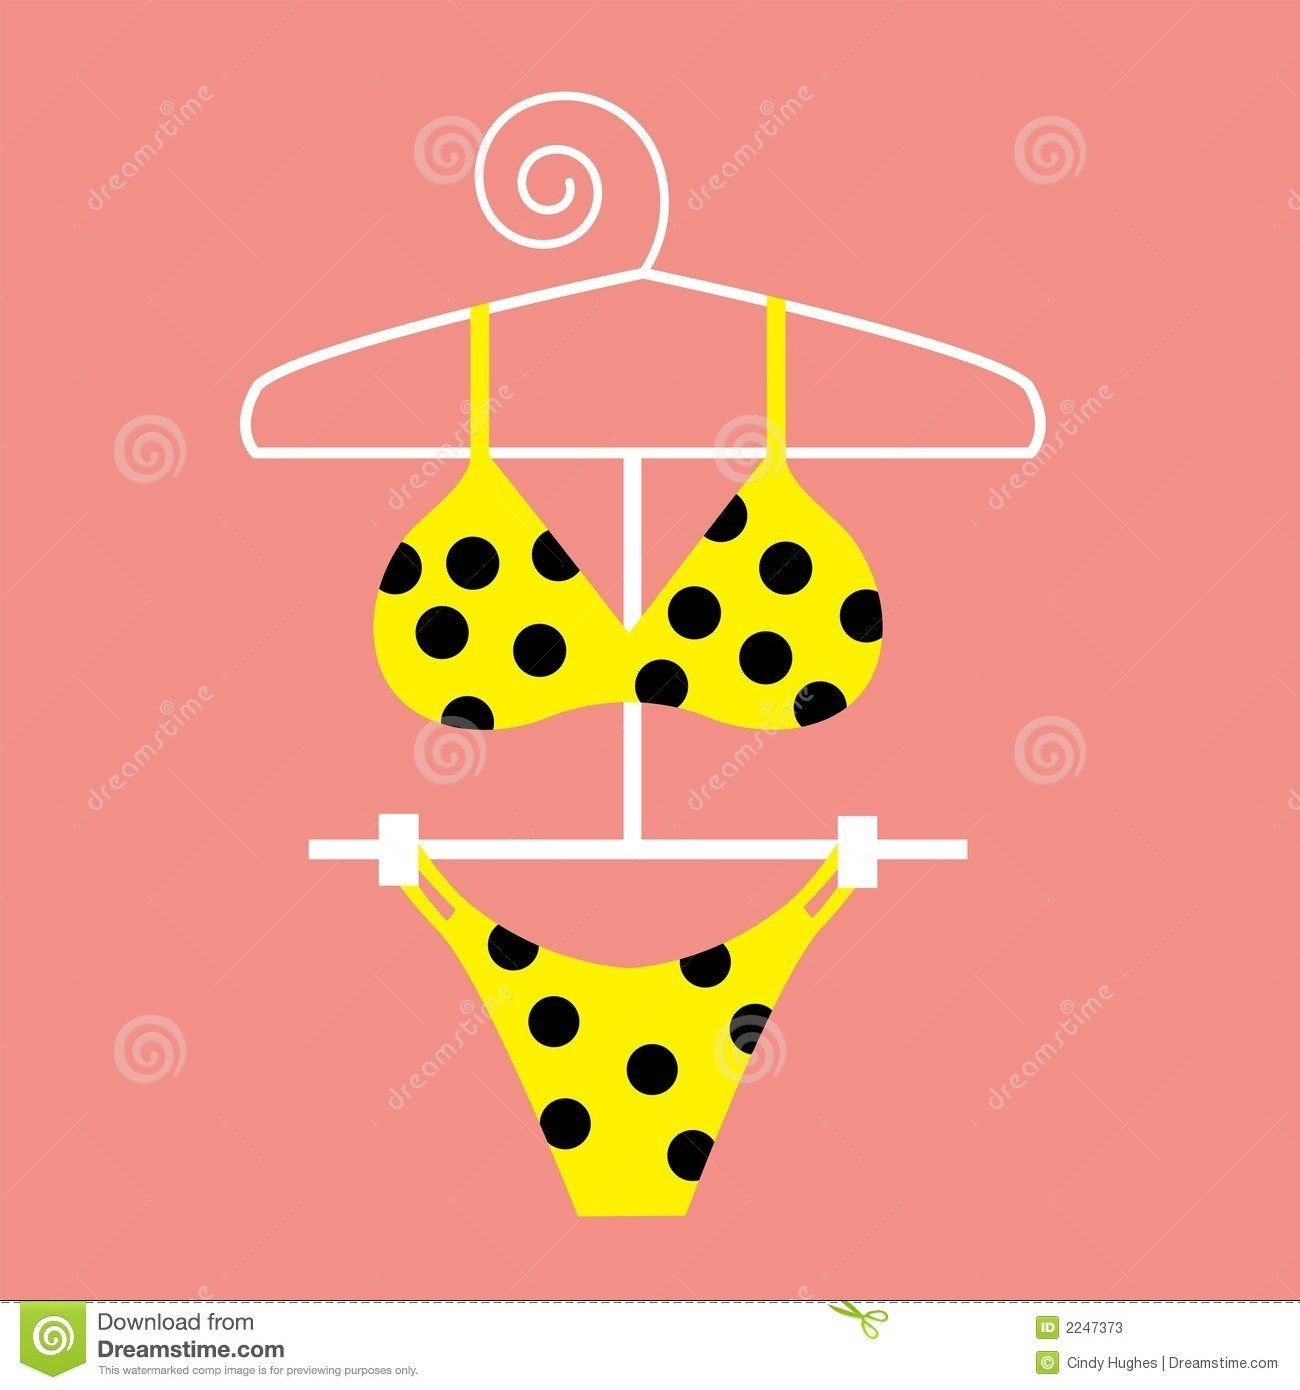 In that yellow polka dot bikini